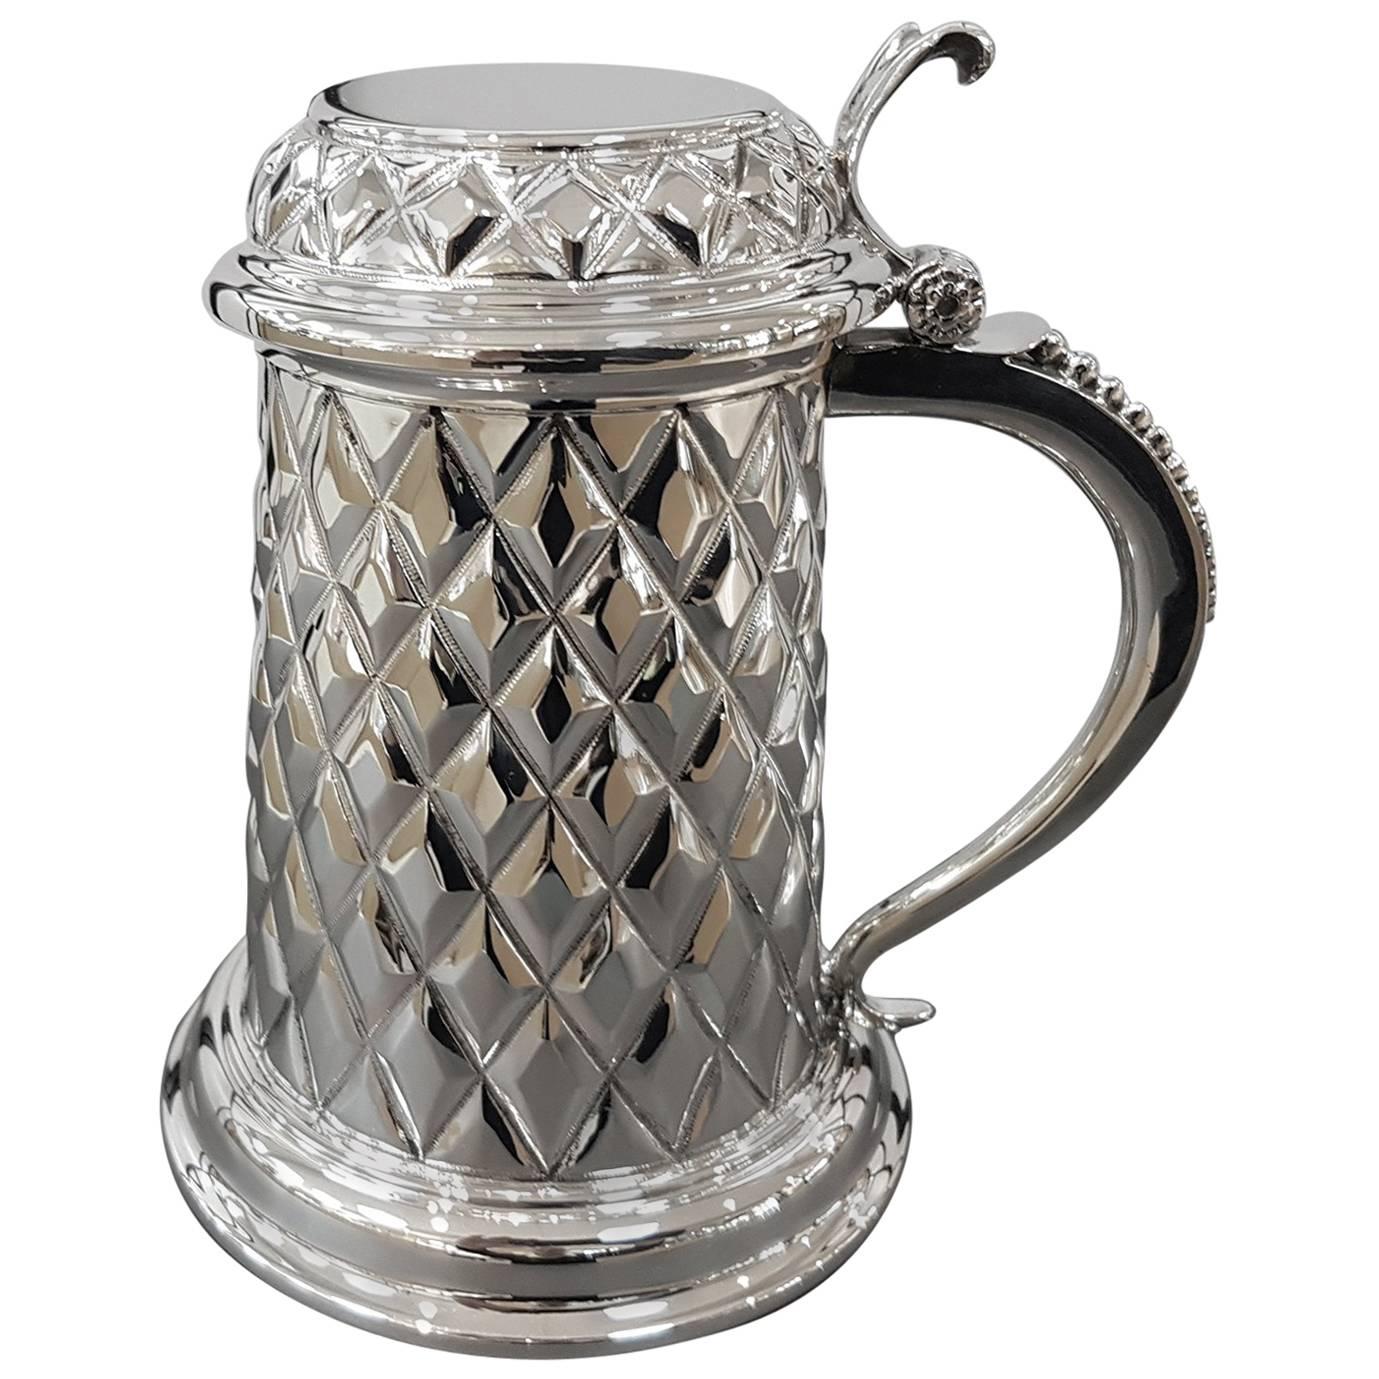 20th Century Italian Silver Tarkard, worked as Italian artisan tradition